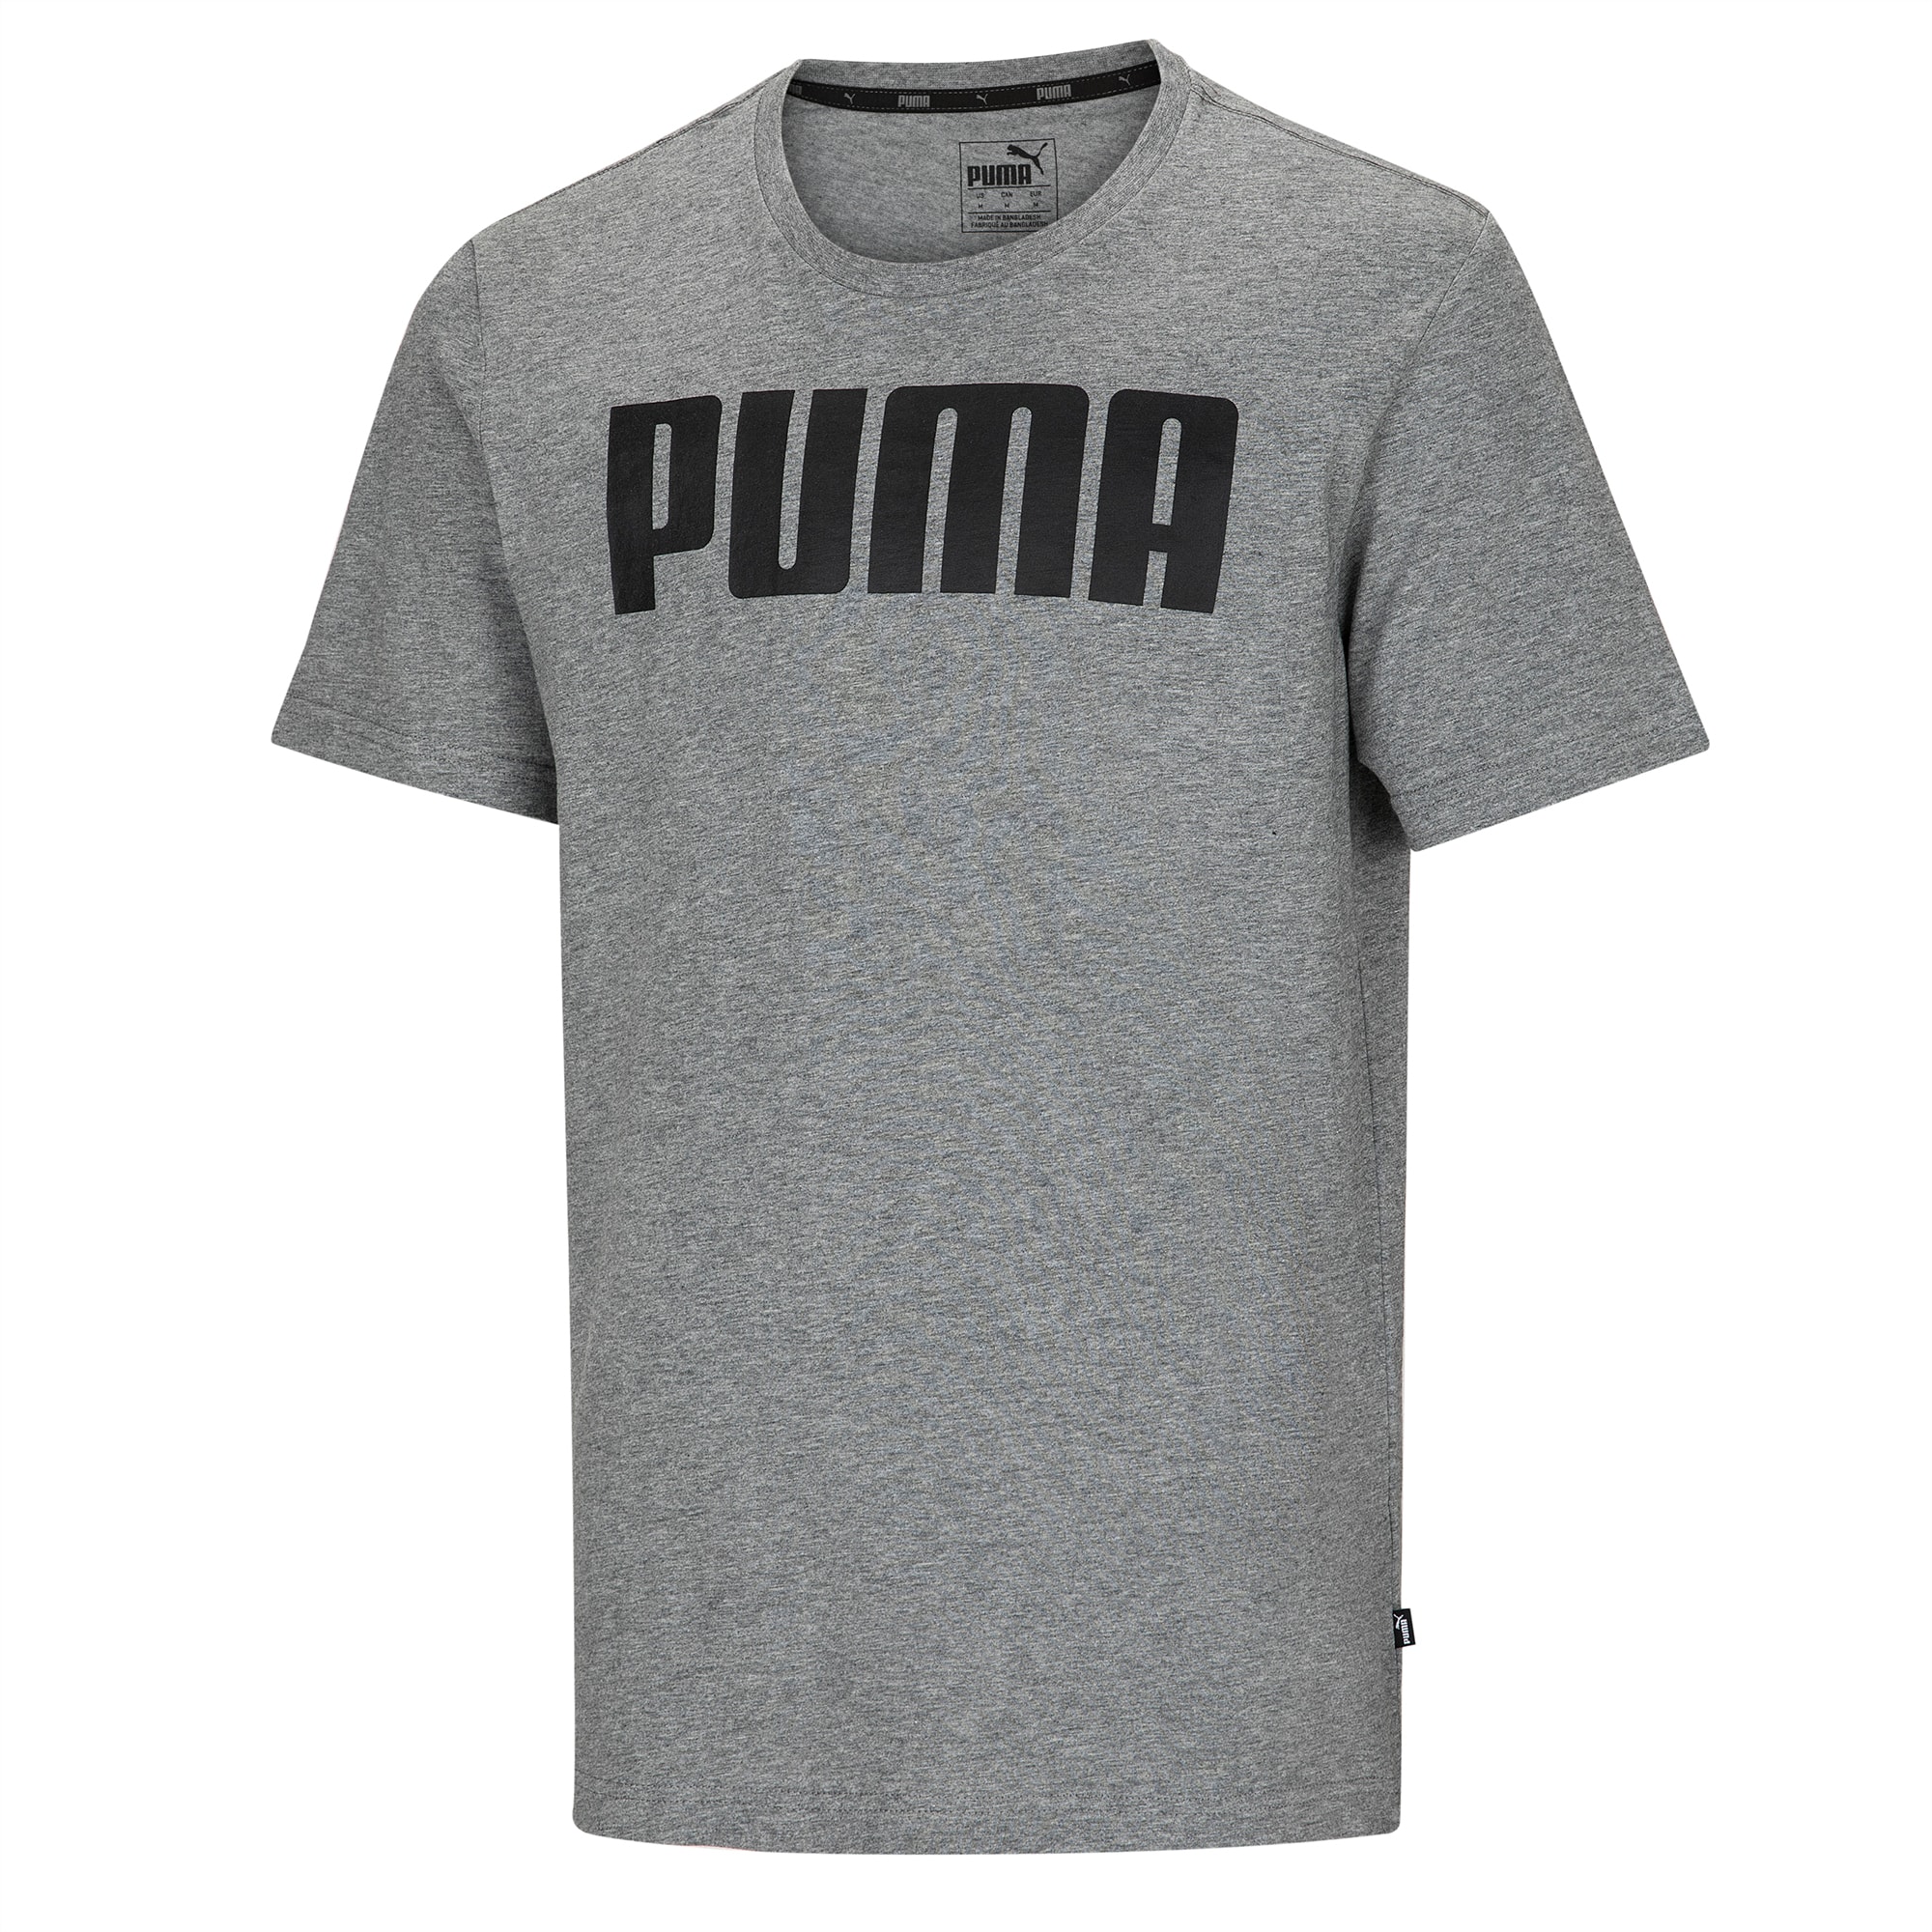 puma shirt